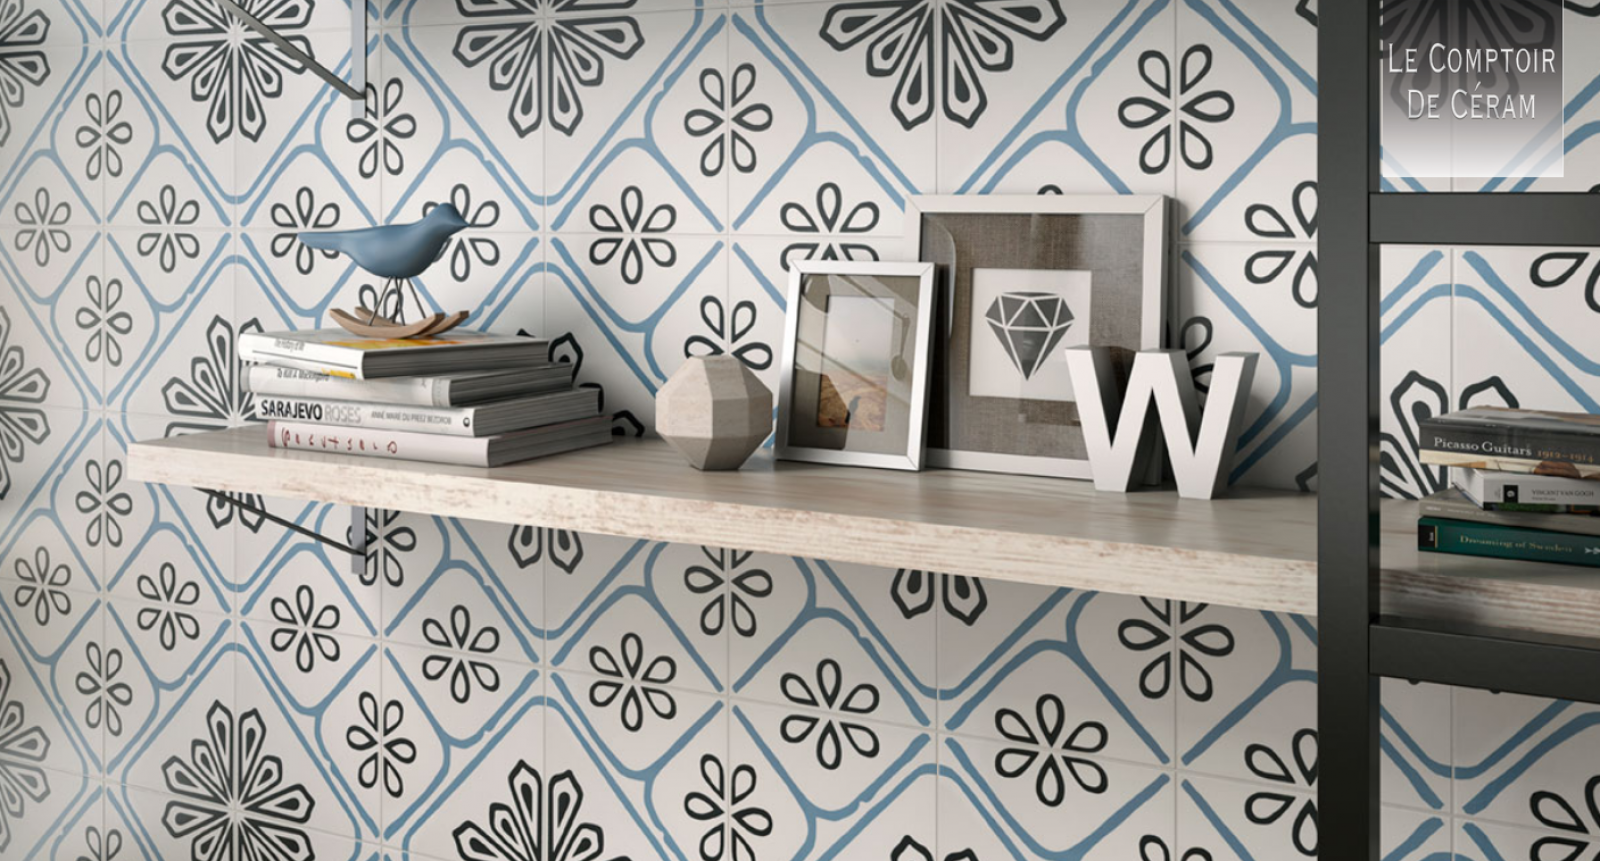 carrelage azulejos portugais pour sol et mur 22 x 22 cm bleu blanc paris 75